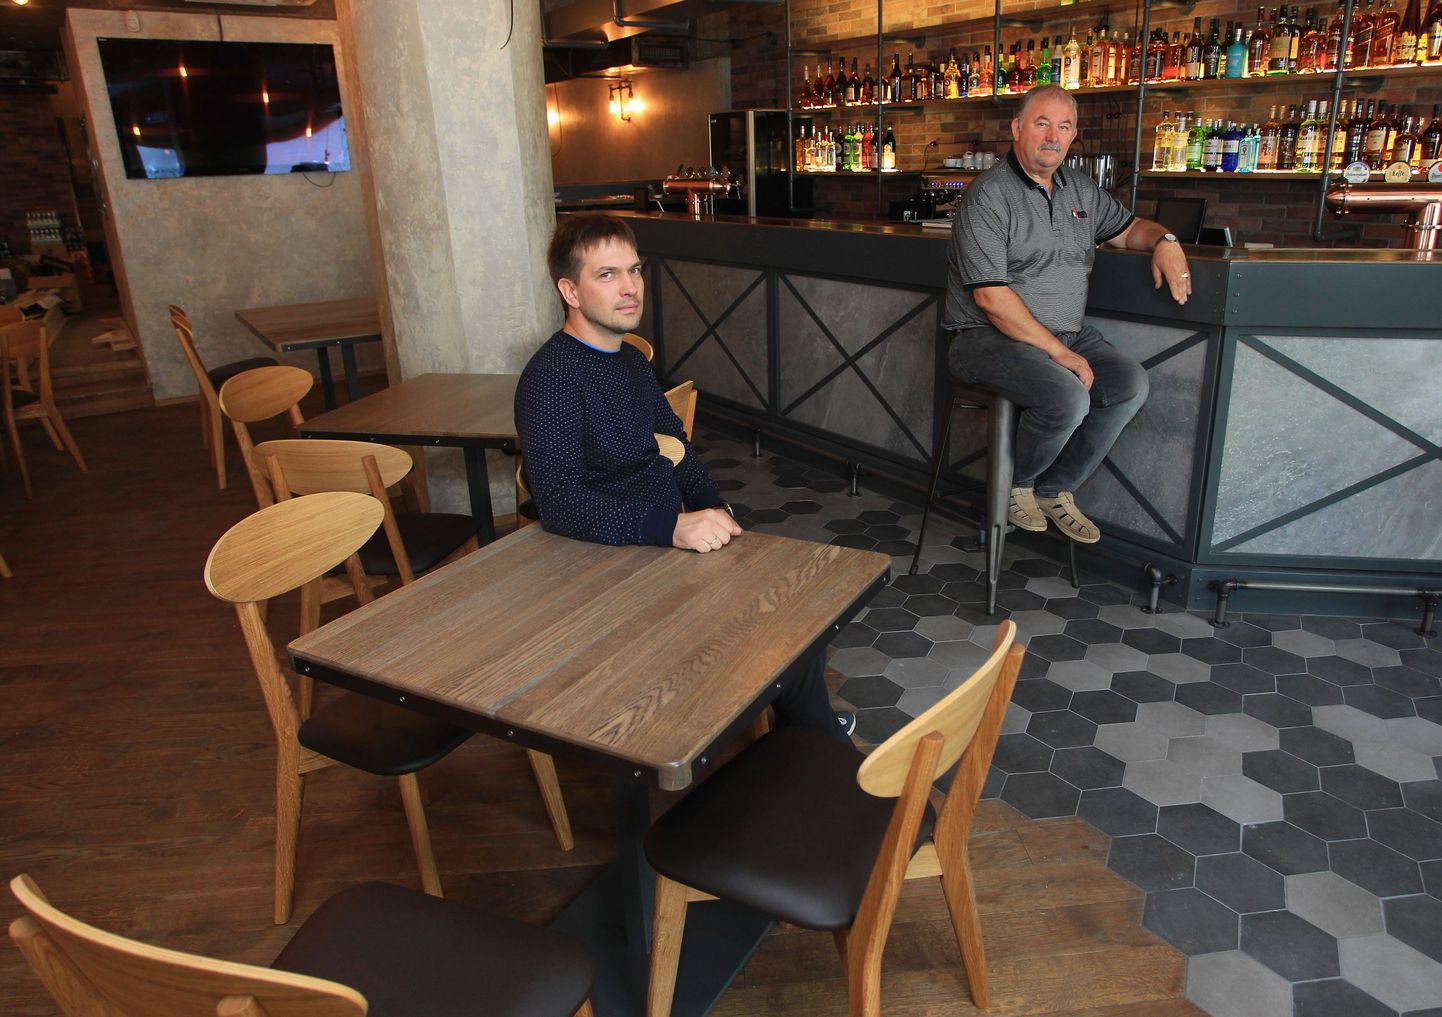 Uue pubi omanikud Jaanus Sults (vasakul) ja Kalle Tammeorg teevad veel viimaseid ettevalmistusi, et lähinädalatel RP 9 külastajatele avada.